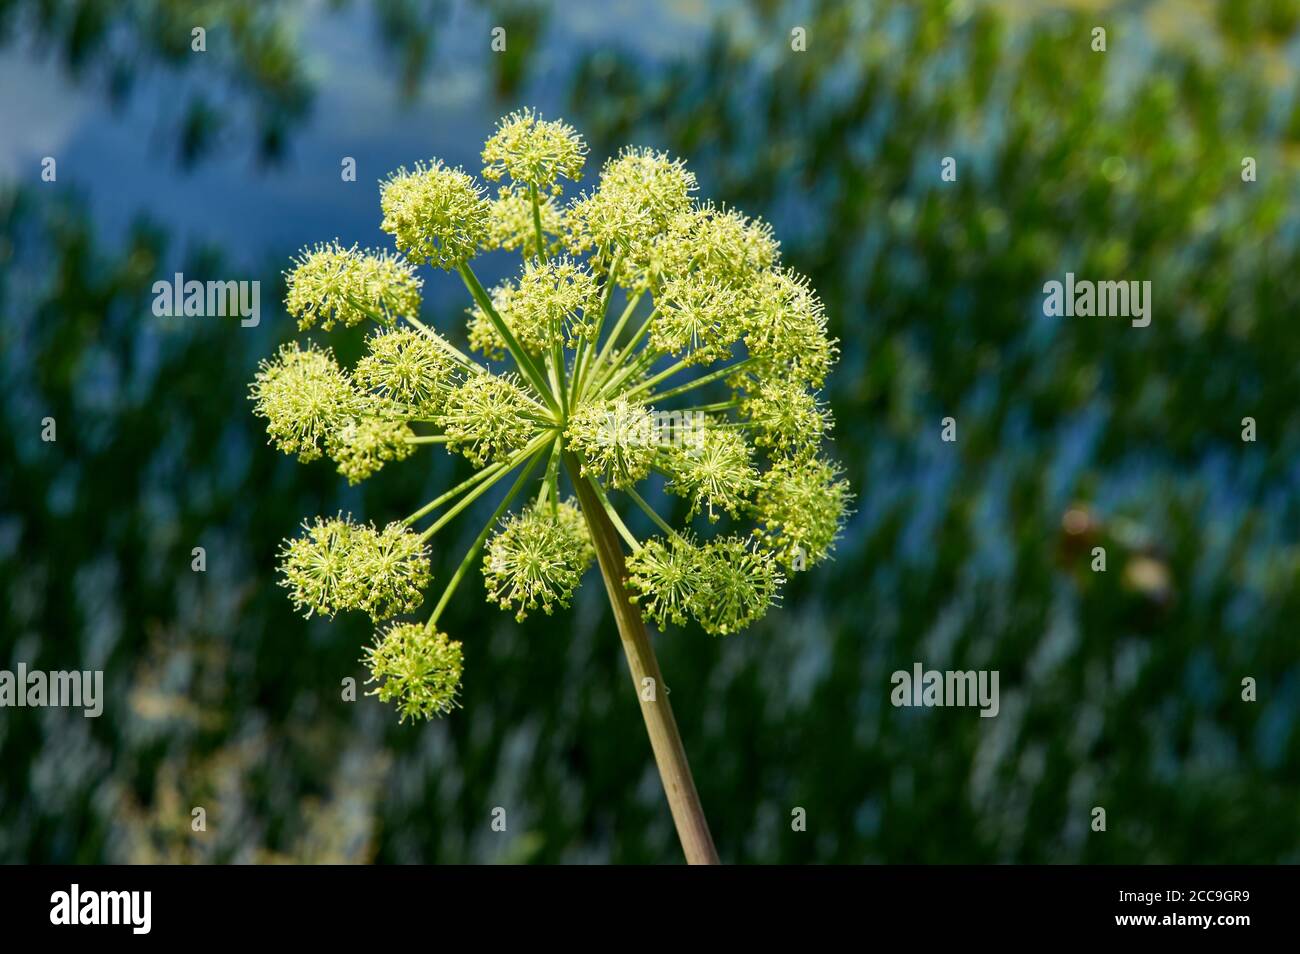 angelica Noruega, Angelica archangelica, planta bienal de la familia  Apiaceae, una subespecie de la cual se cultiva por su comestible dulcemente  perfumada Fotografía de stock - Alamy